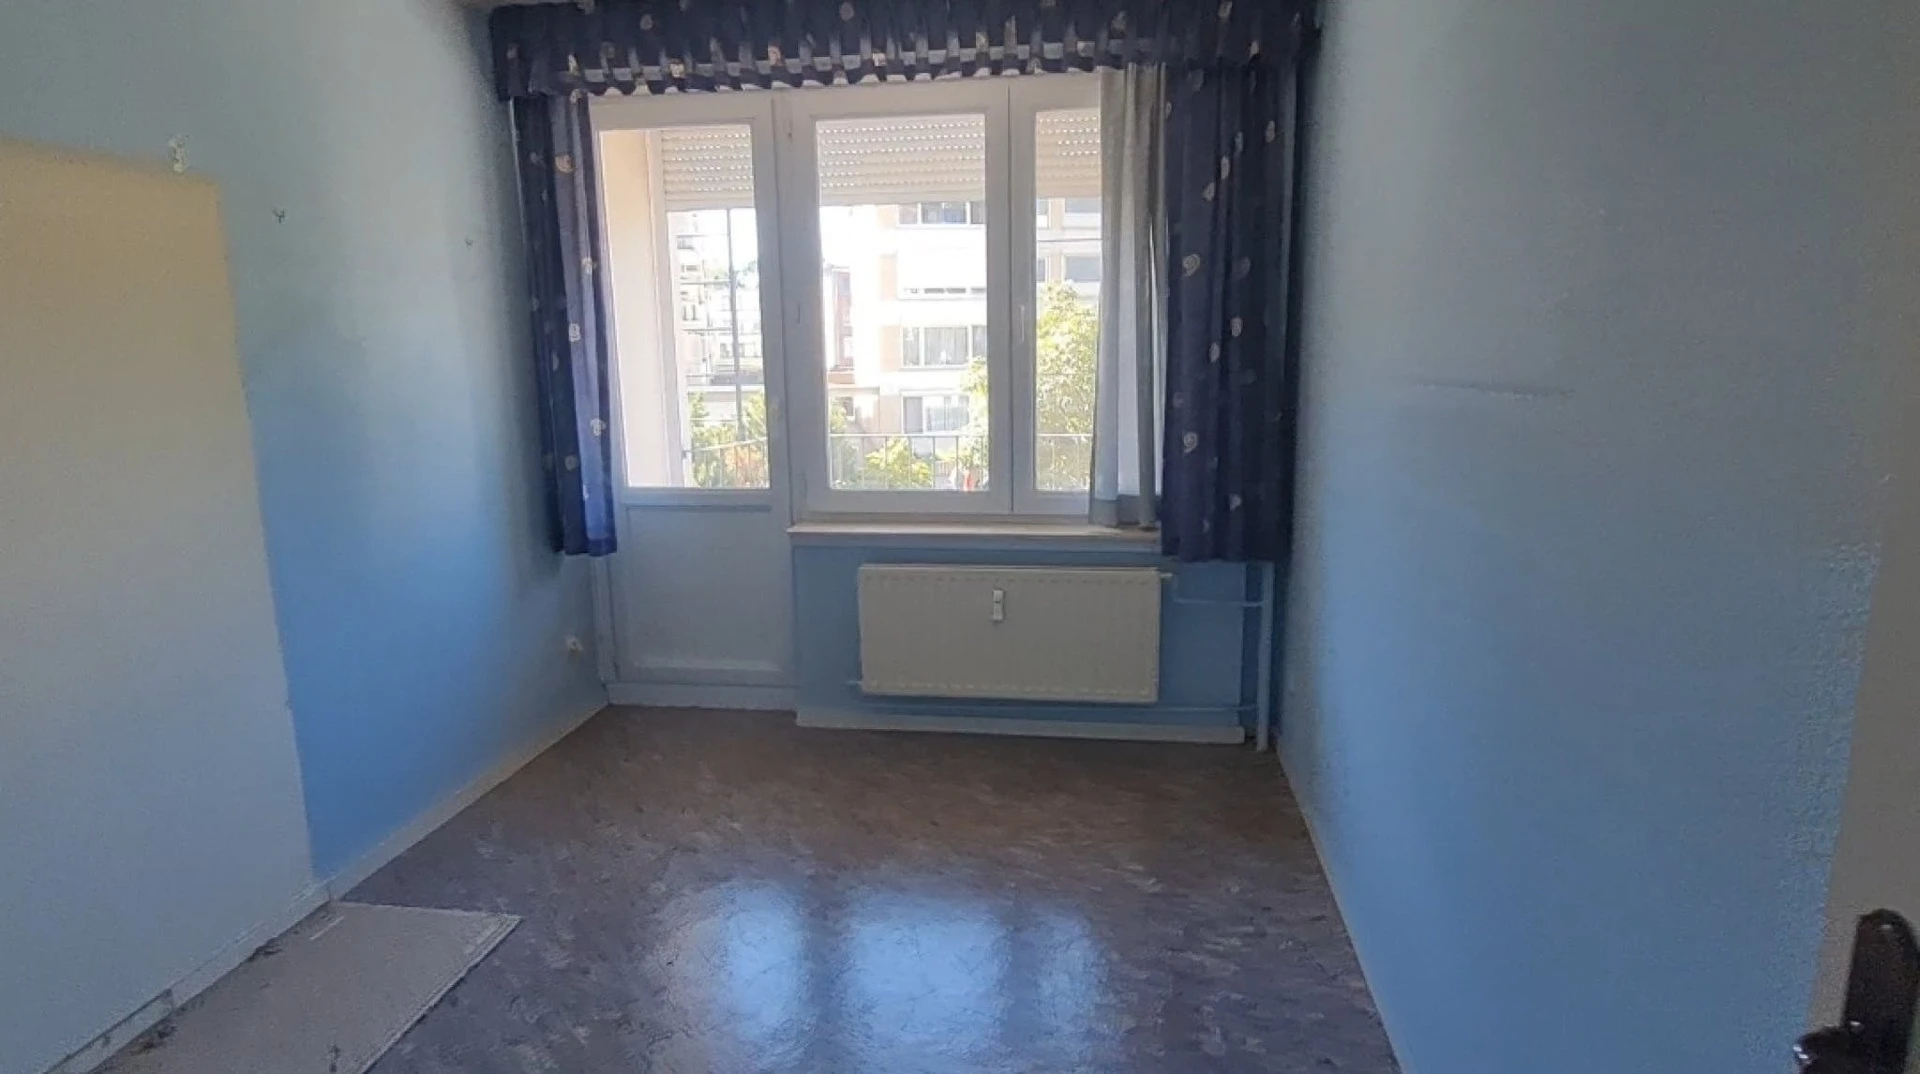 Shared room in 3-bedroom flat Antwerp